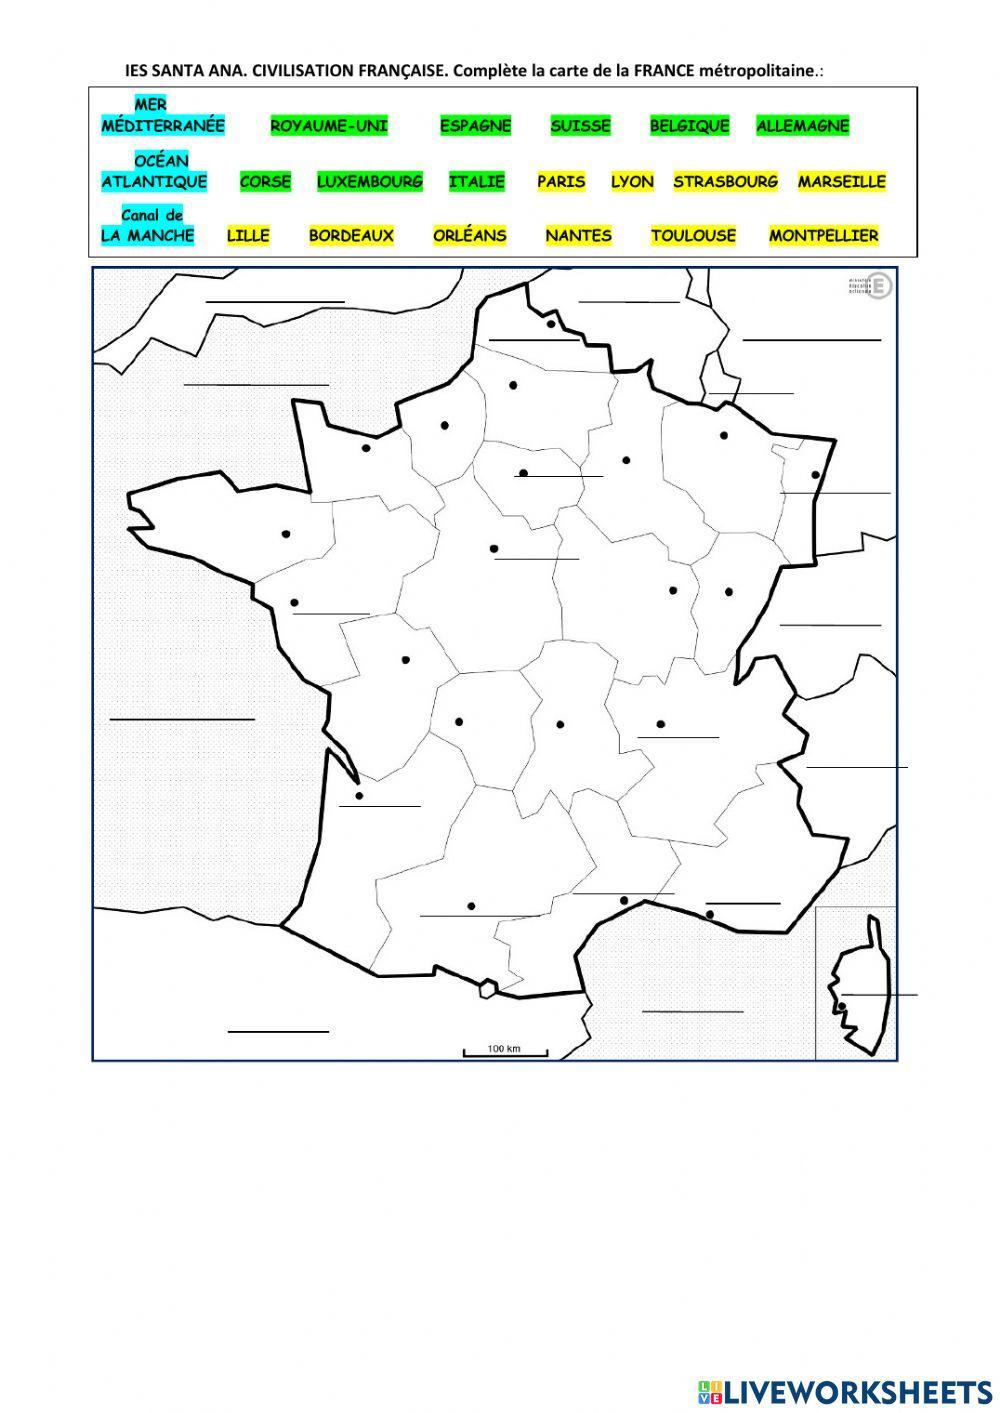 Carte de france métropolitaine.